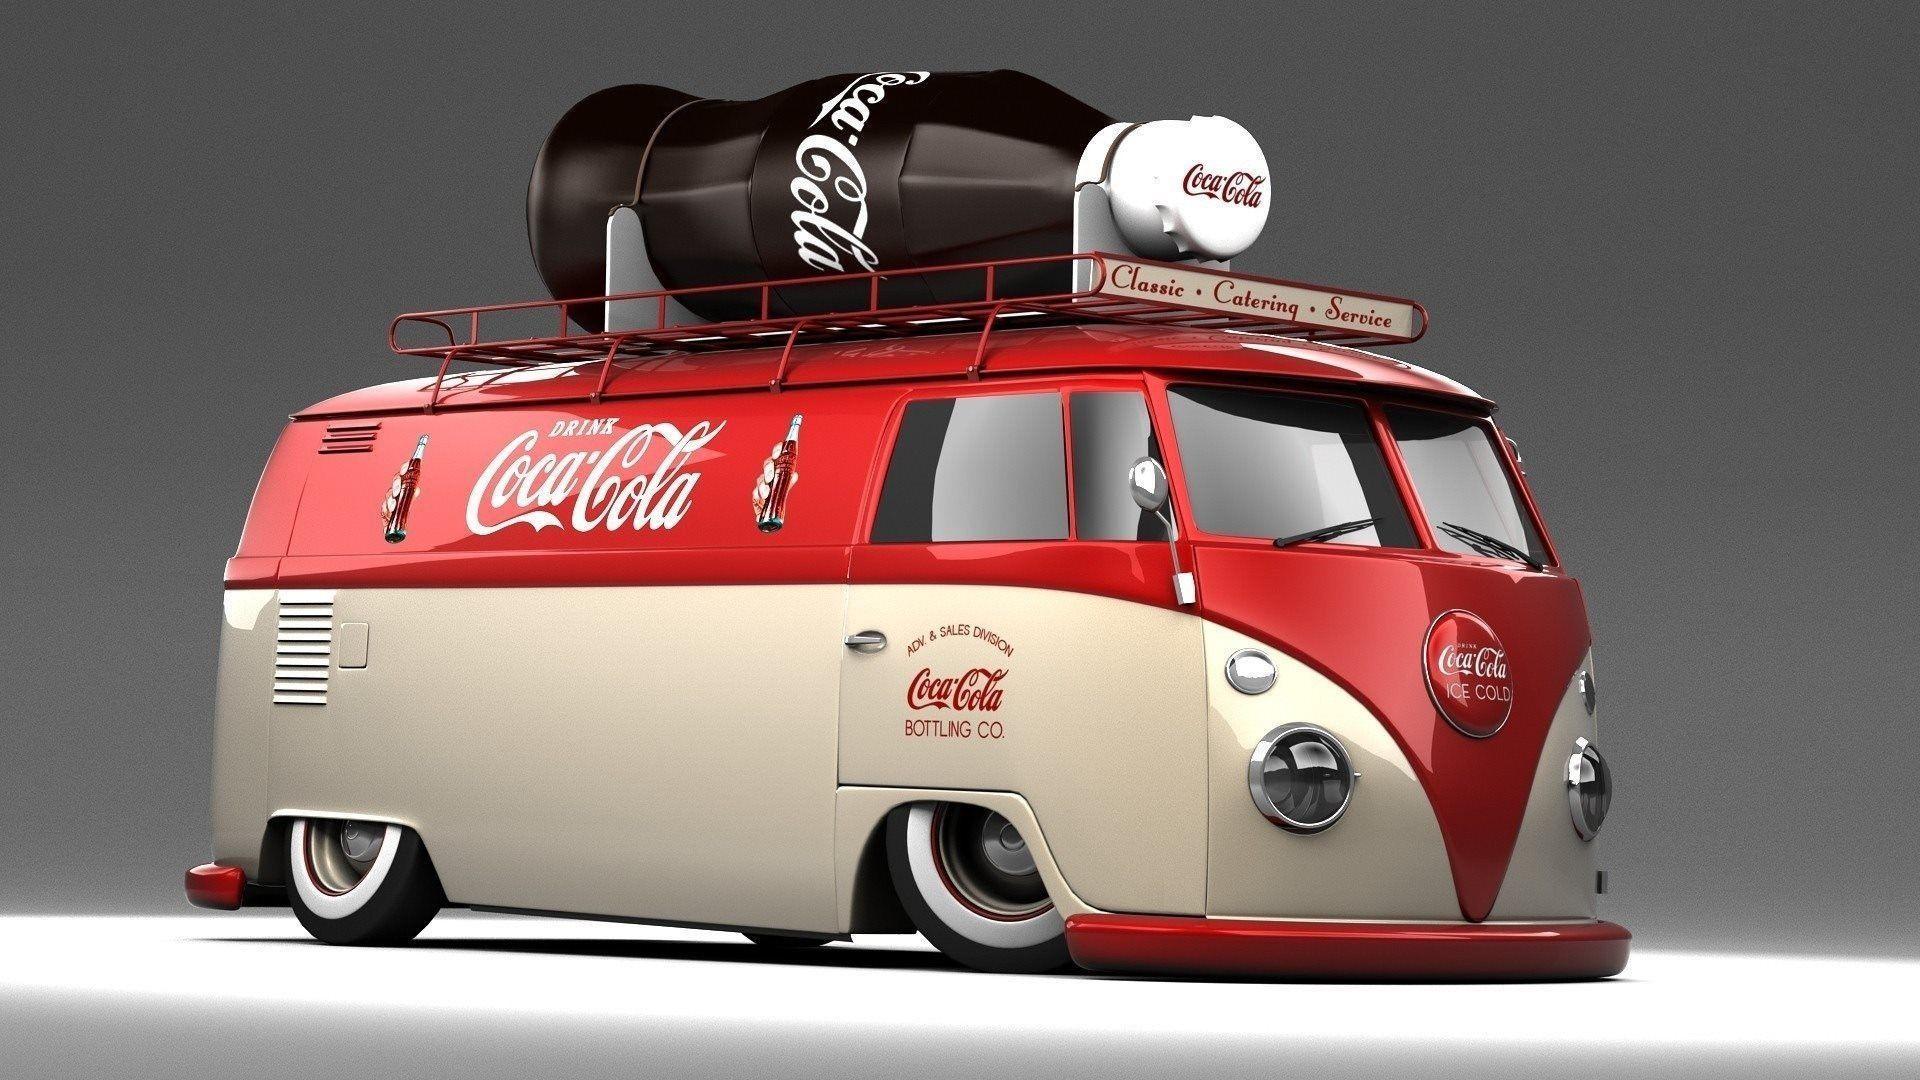 Coca Cola Volkswagen HD Background & Logo Wallpaper